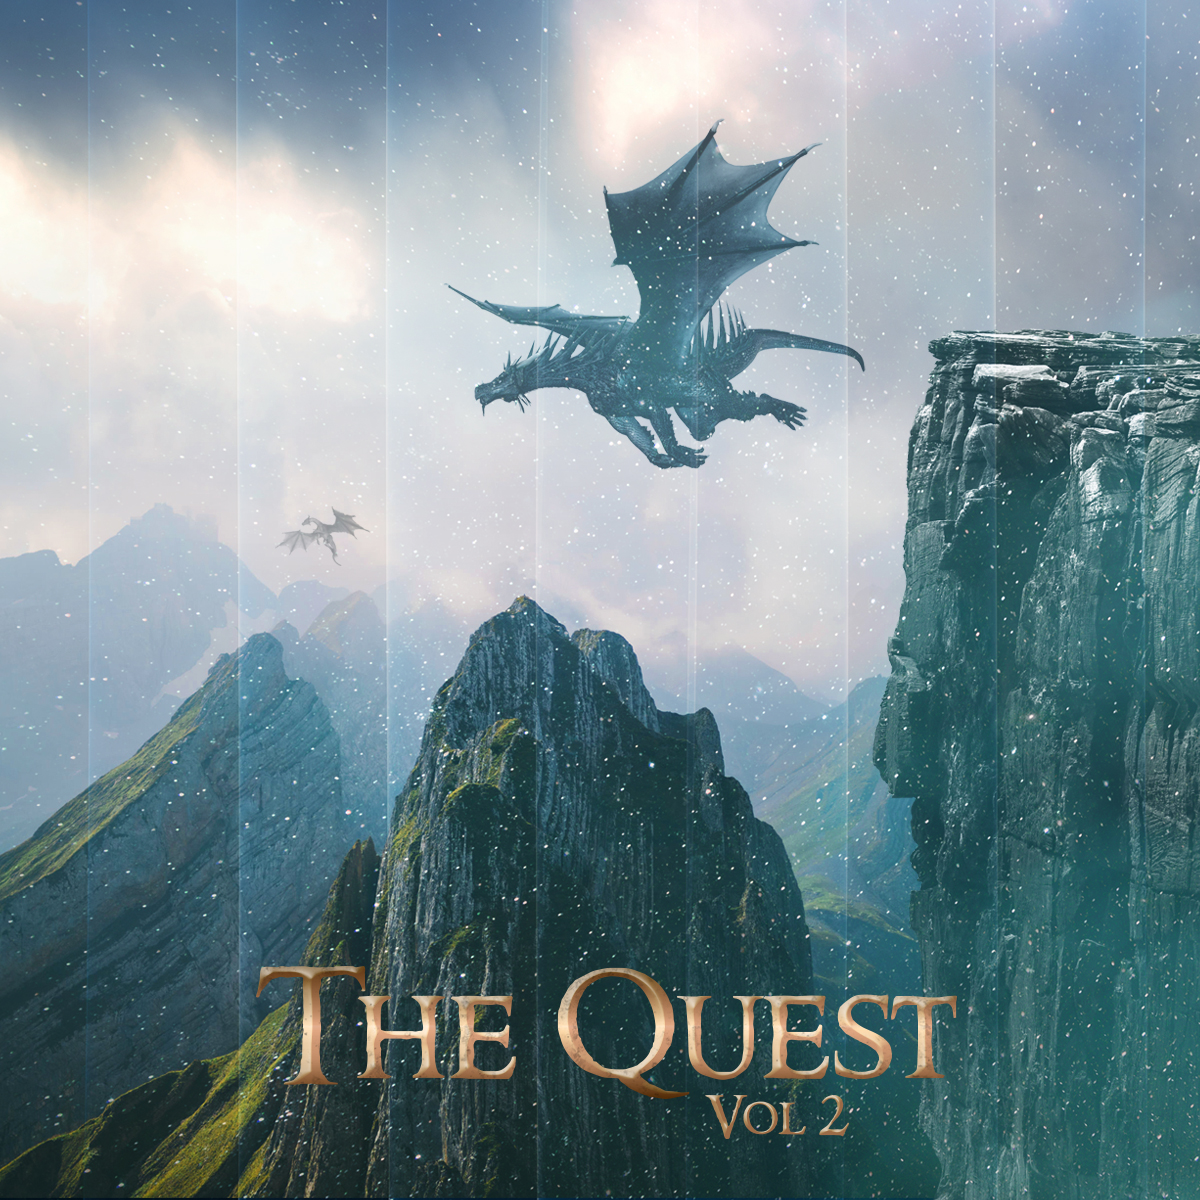 The Quest Vol 2